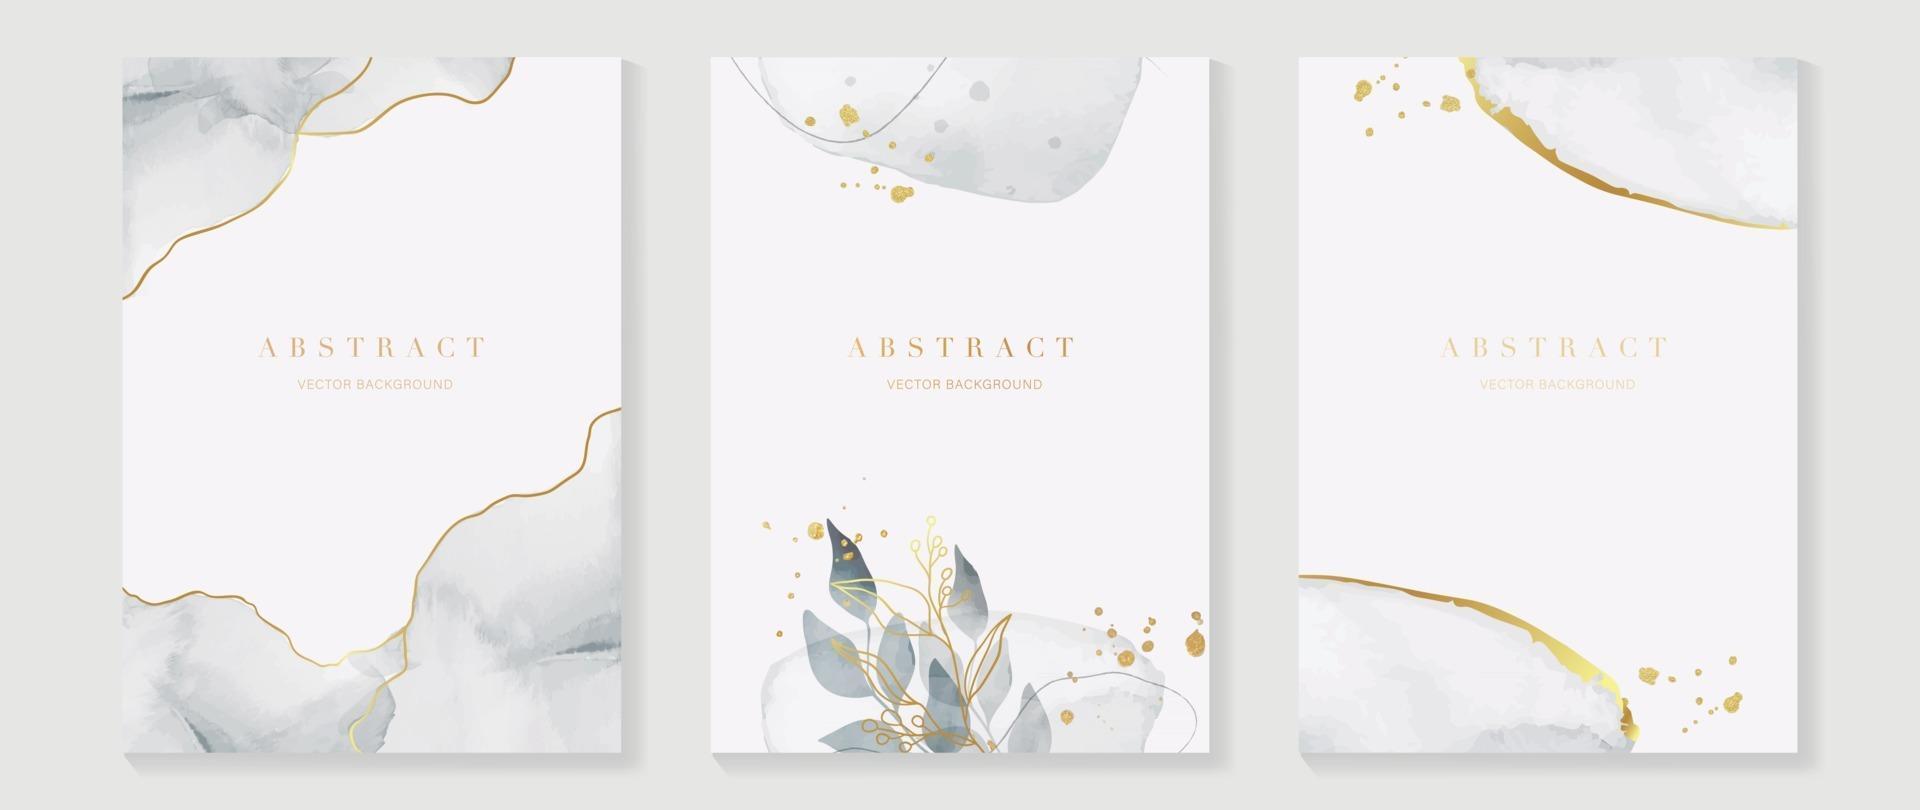 abstrakt konst bakgrundsvektor. lyxig inbjudningskortbakgrund med gyllene linjekonstblomma och botaniska löv, organiska former, akvarell. vektor inbjudningsdesign för bröllop och VIP-omslagsmall.